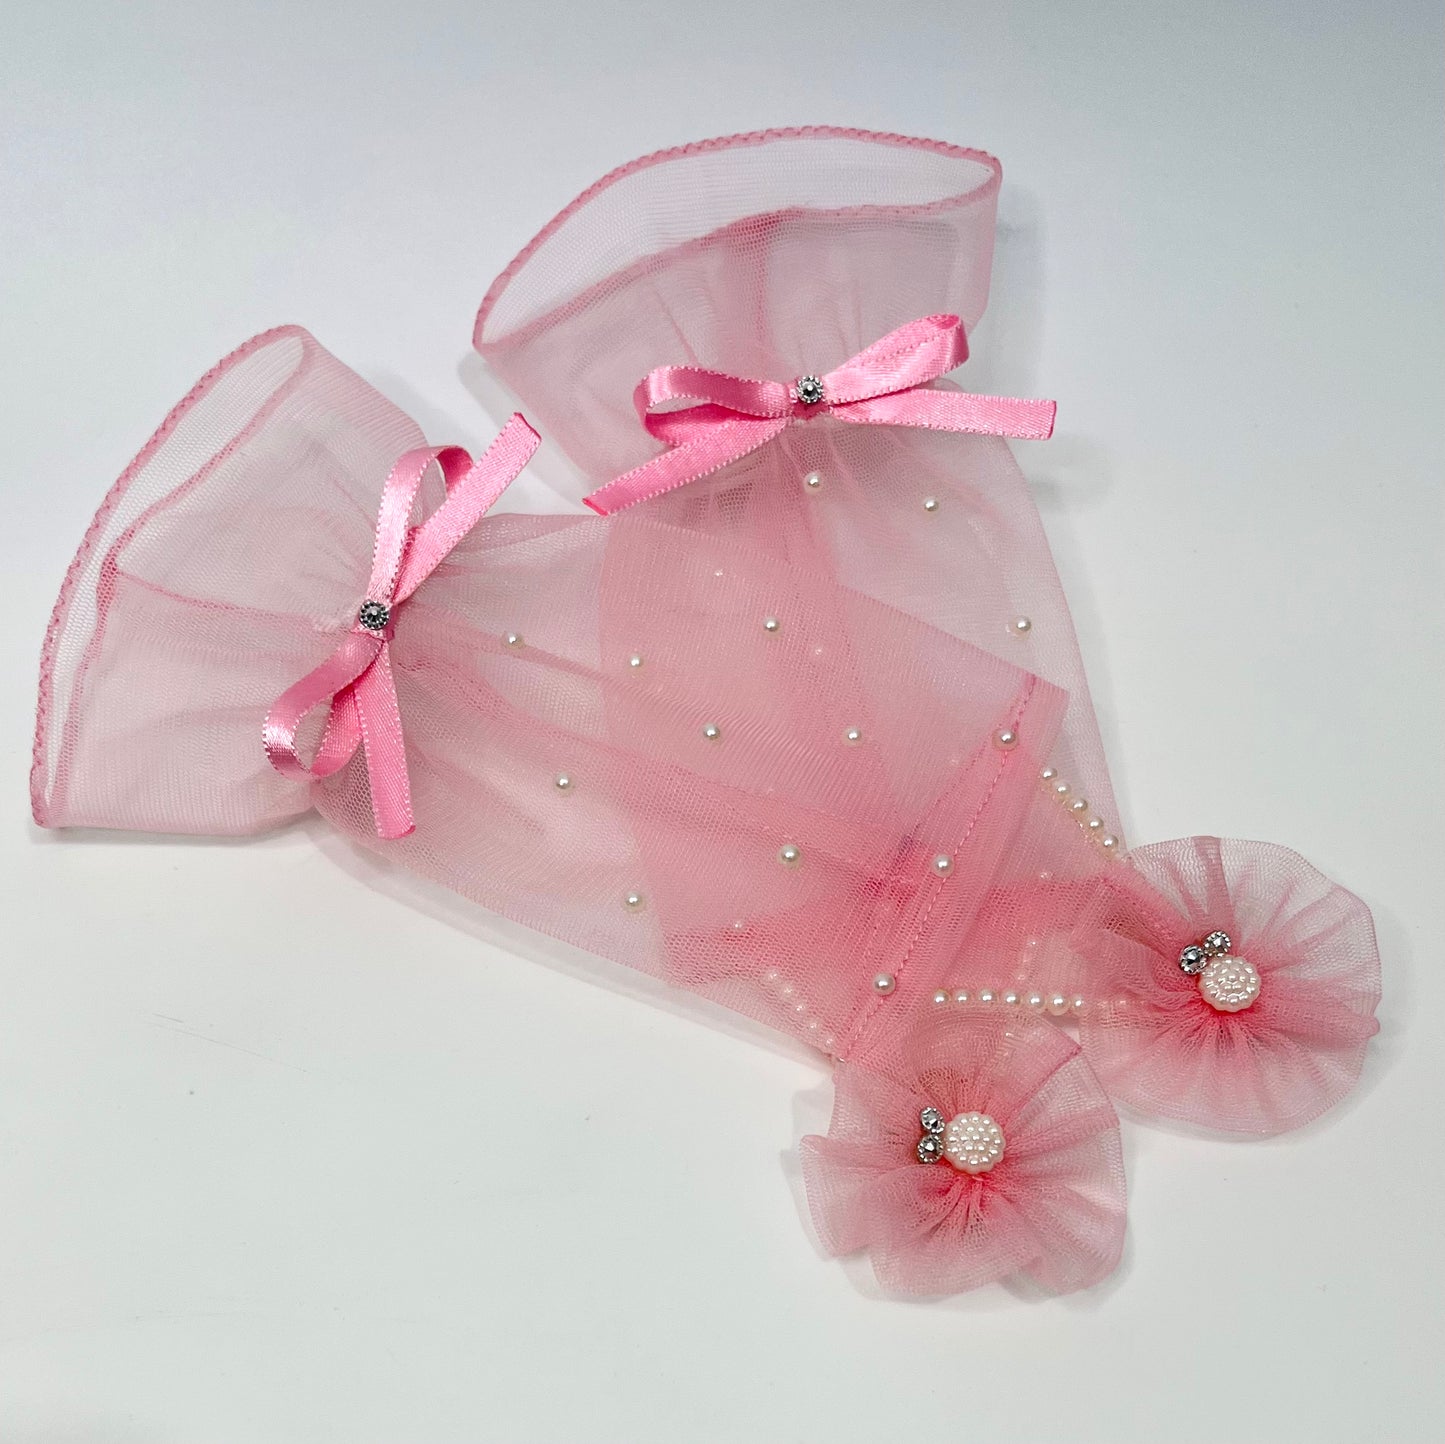 Princess Aurora Gloves | Birthday Princess Accessories